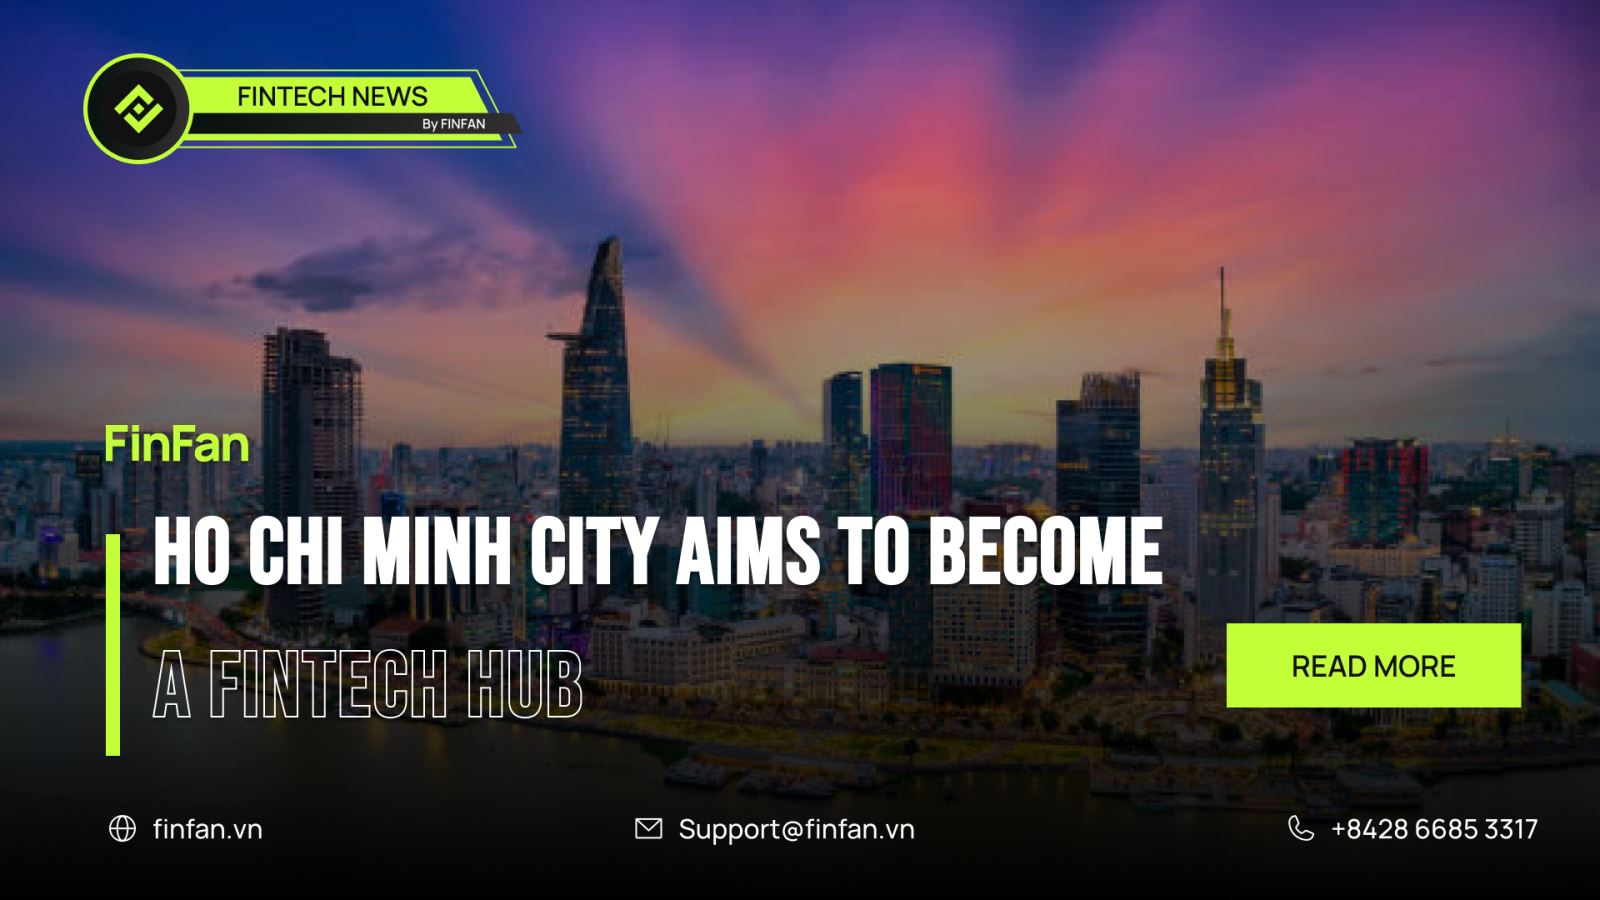 Ho Chi Minh City aims to become fintech hub